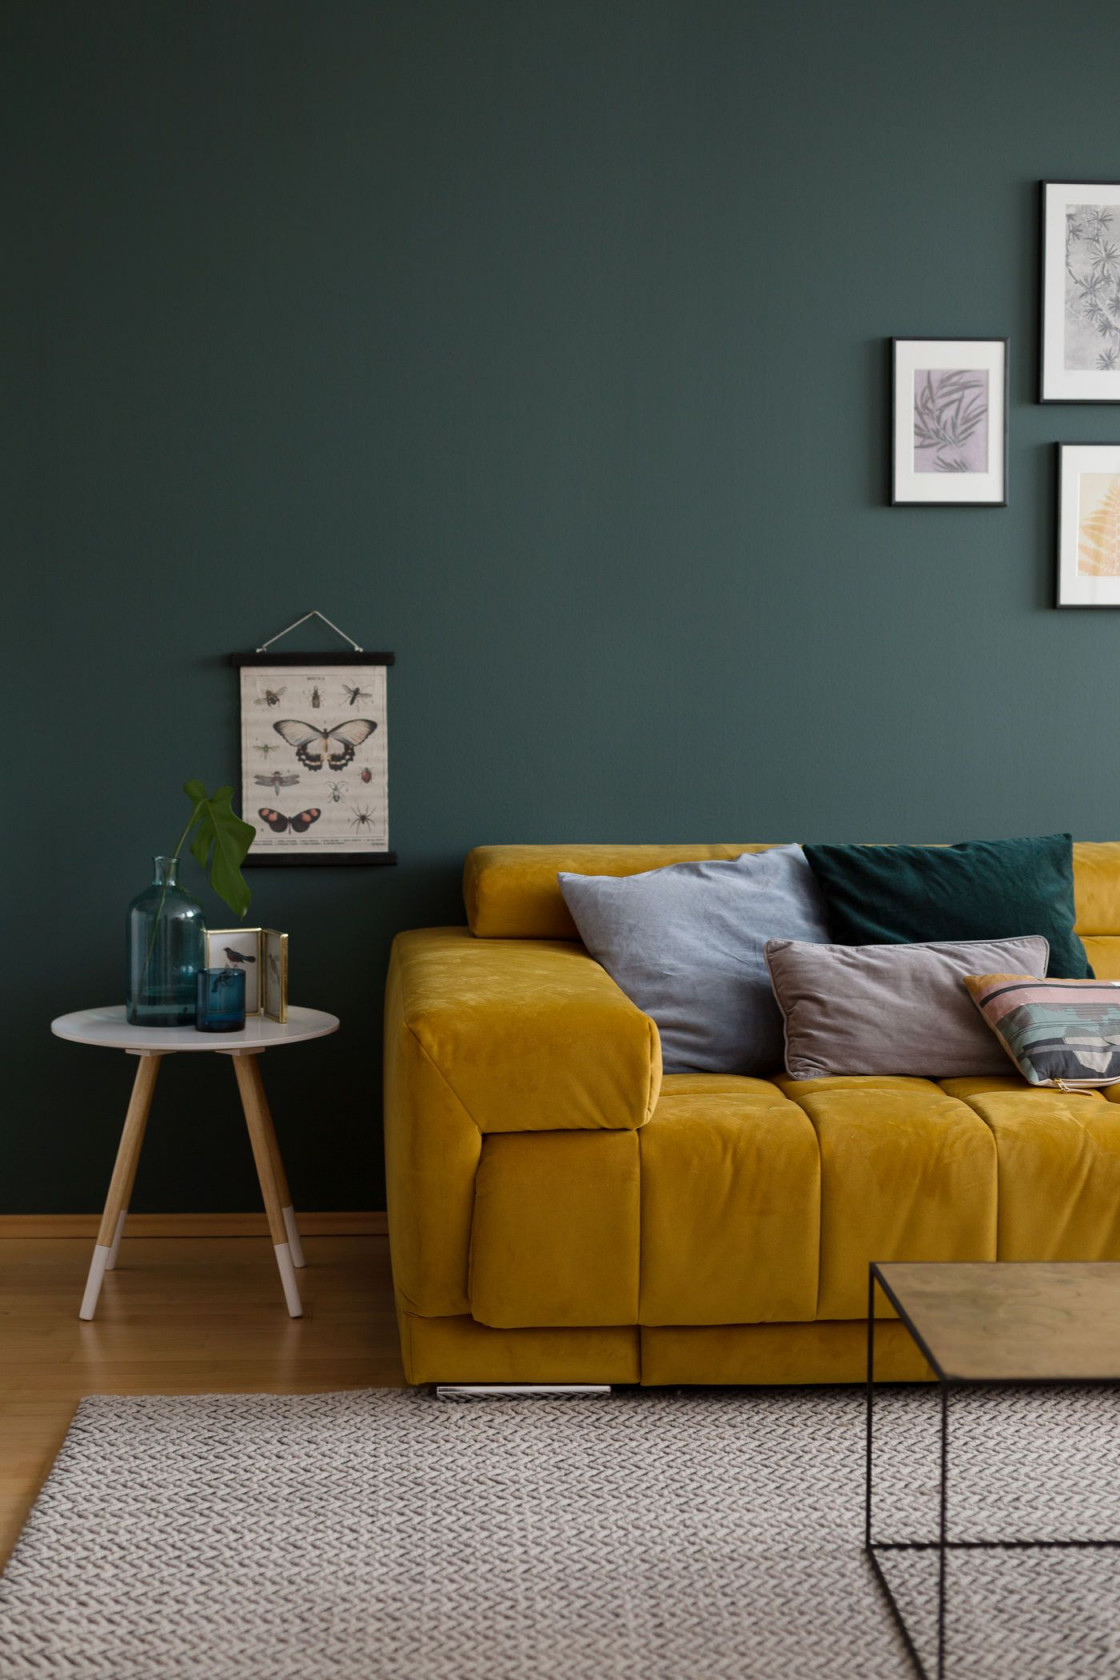 Wandfarbe Grün Die Besten Ideen Und Tipps Zum Streichen von Wohnzimmer Ideen Grün Bild